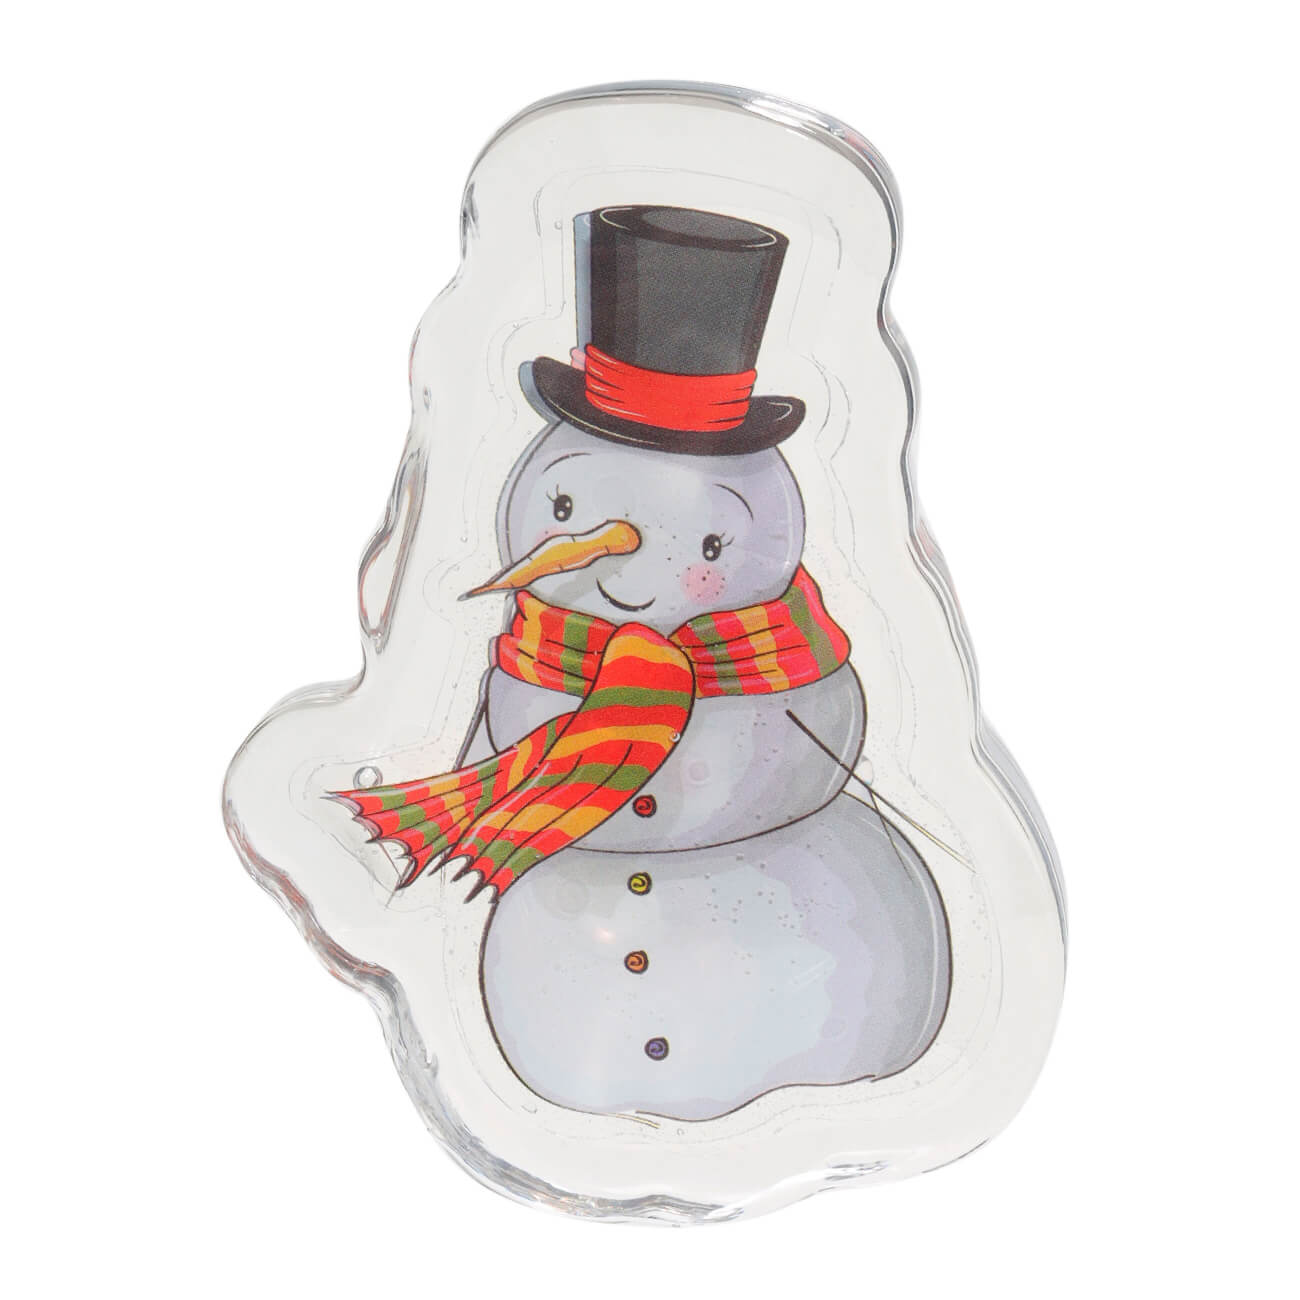 Наклейка, 6х8 см, с подсветкой, многоразовая, термопластик, Снеговик, Christmas